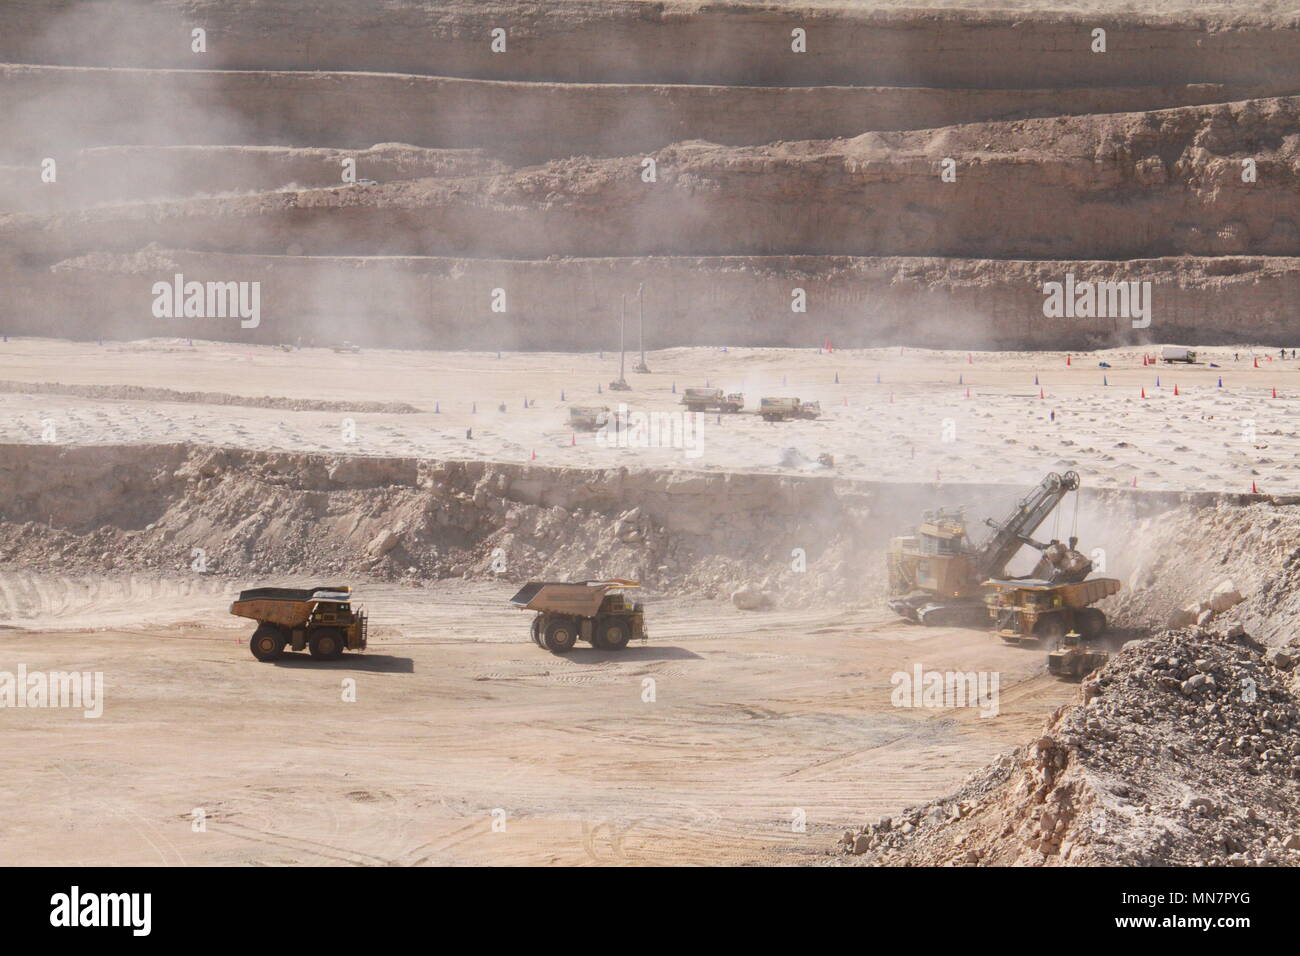 Swakopmund. Le 11 mai, 2018. Photo prise le 11 mai 2018 affiche camions travaillant à la mine d'uranium Husab dans l'ouest de la Namibie. La mine Husab est l'une des plus grandes mines d'uranium dans le monde. Credit : Wu Changwei/Xinhua/Alamy Live News Banque D'Images